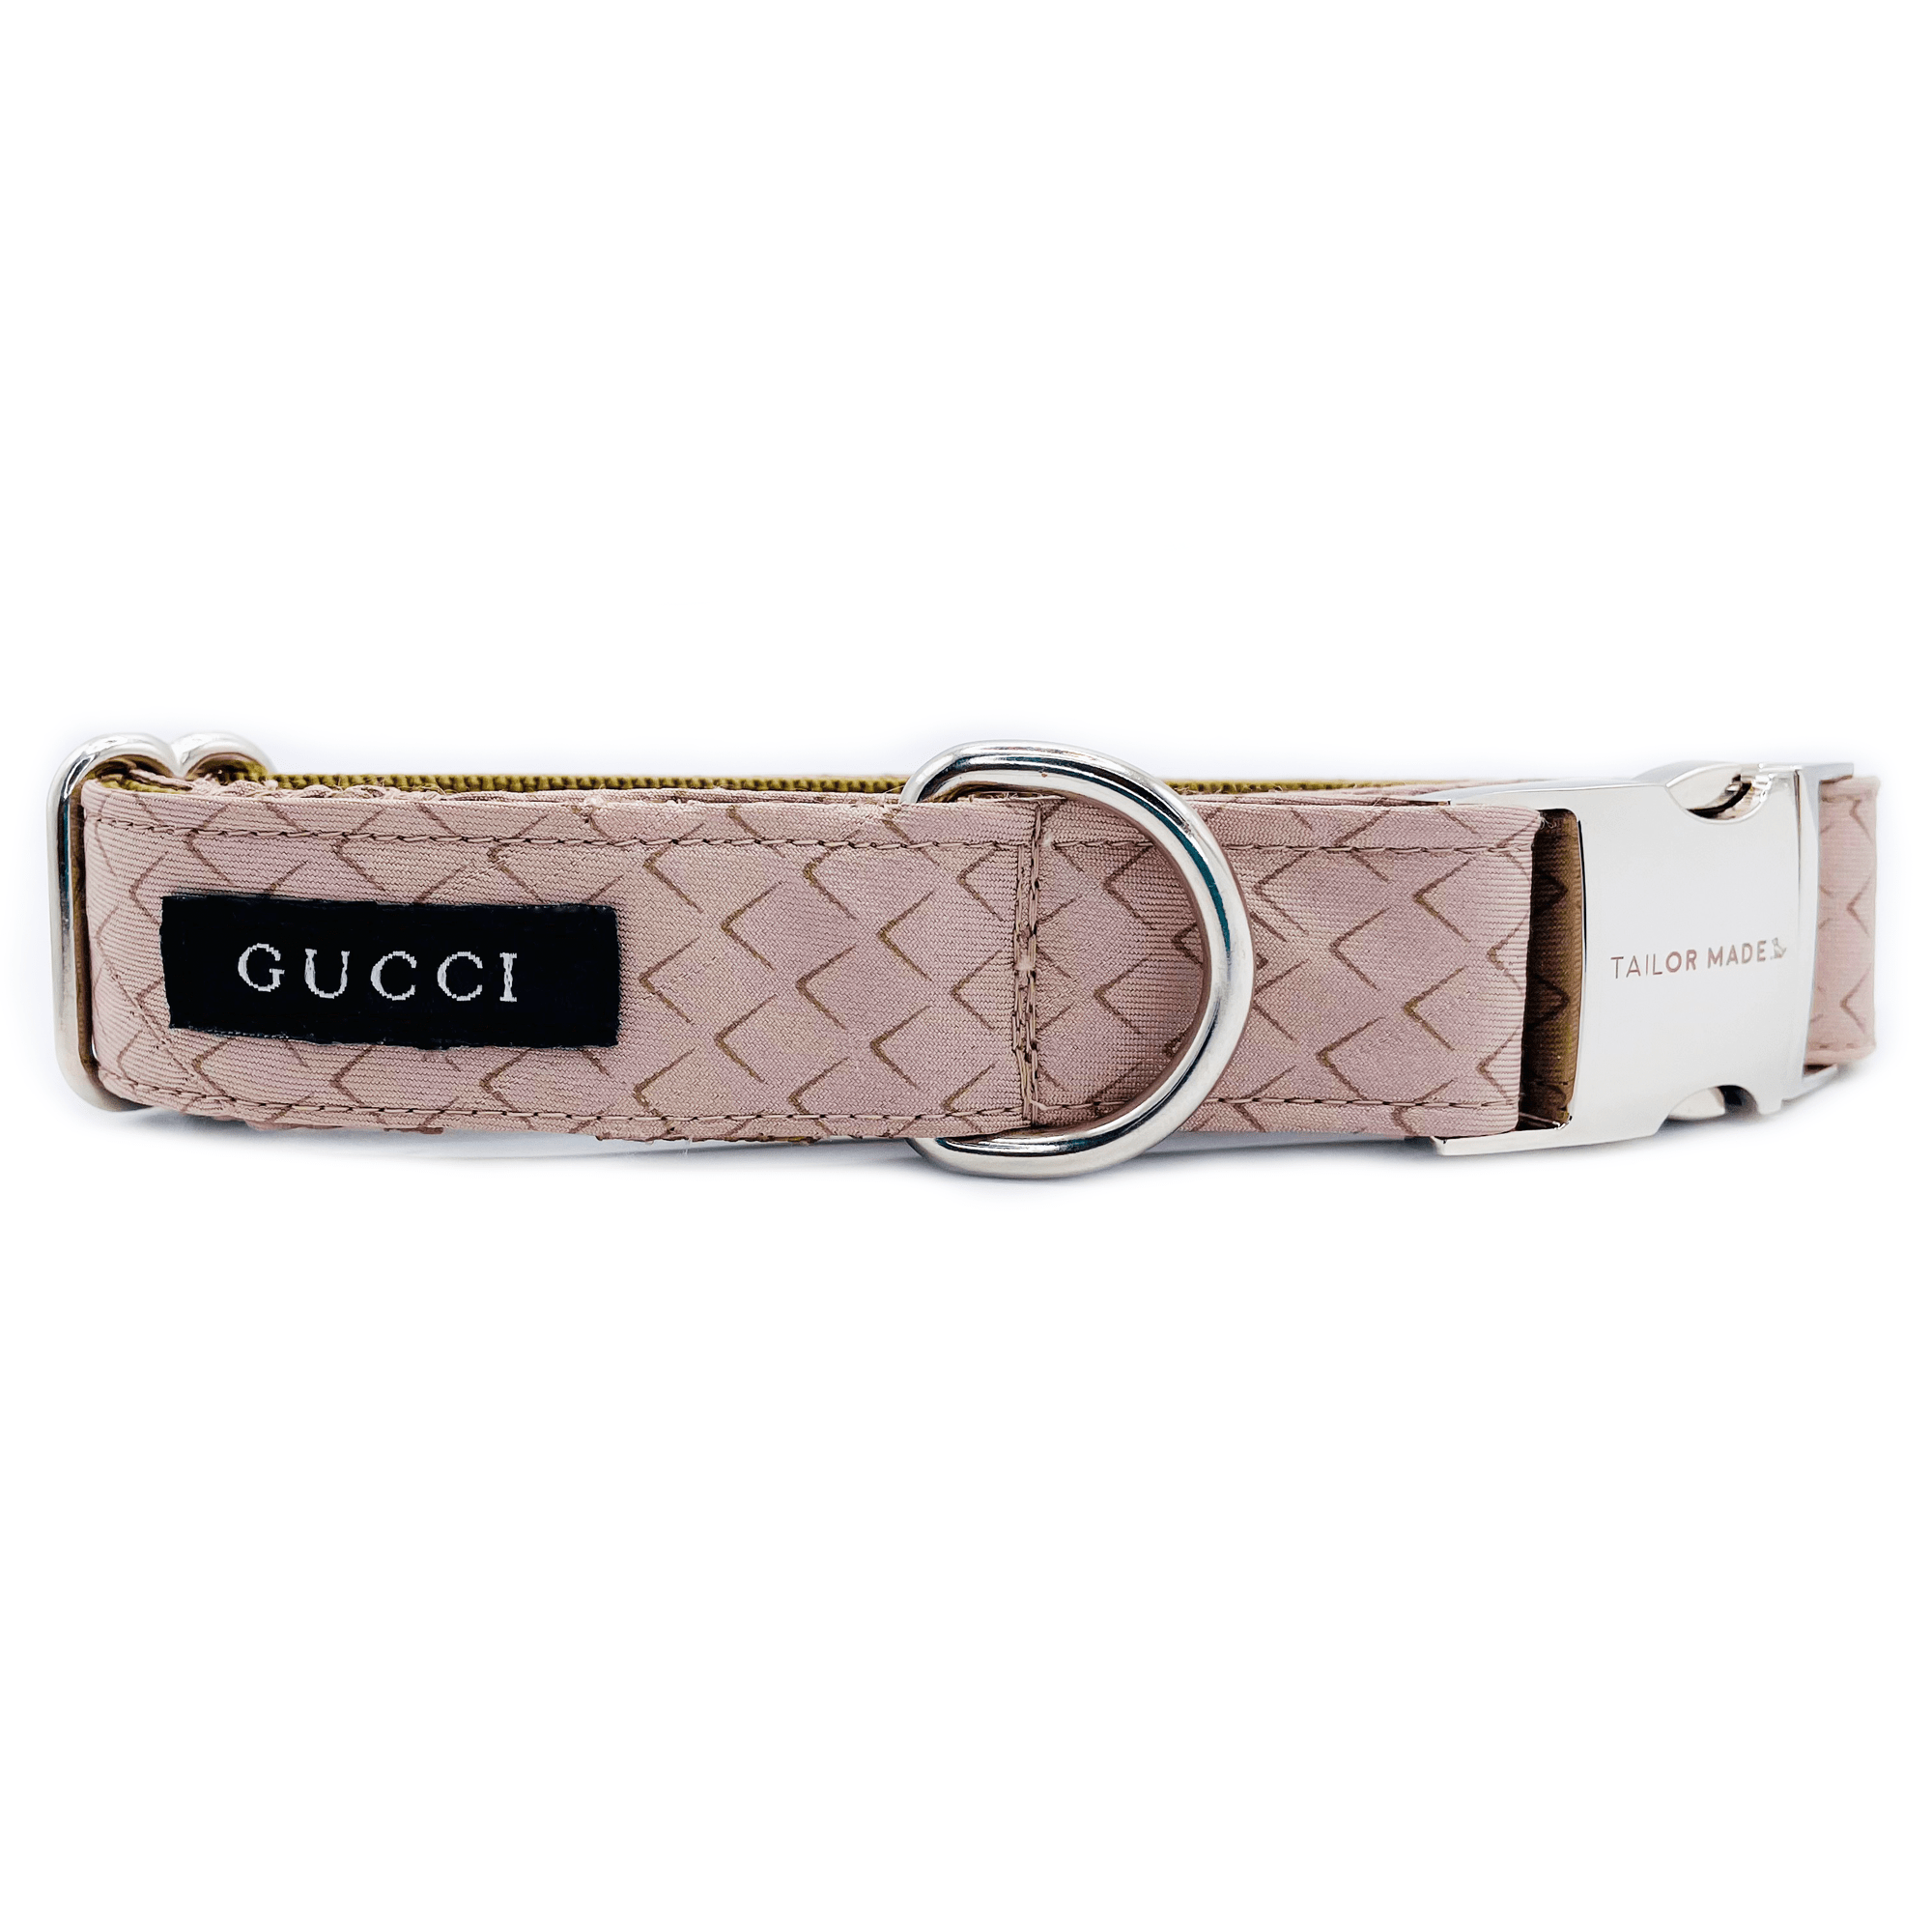 Gucci Dog Collar - Tailor Made